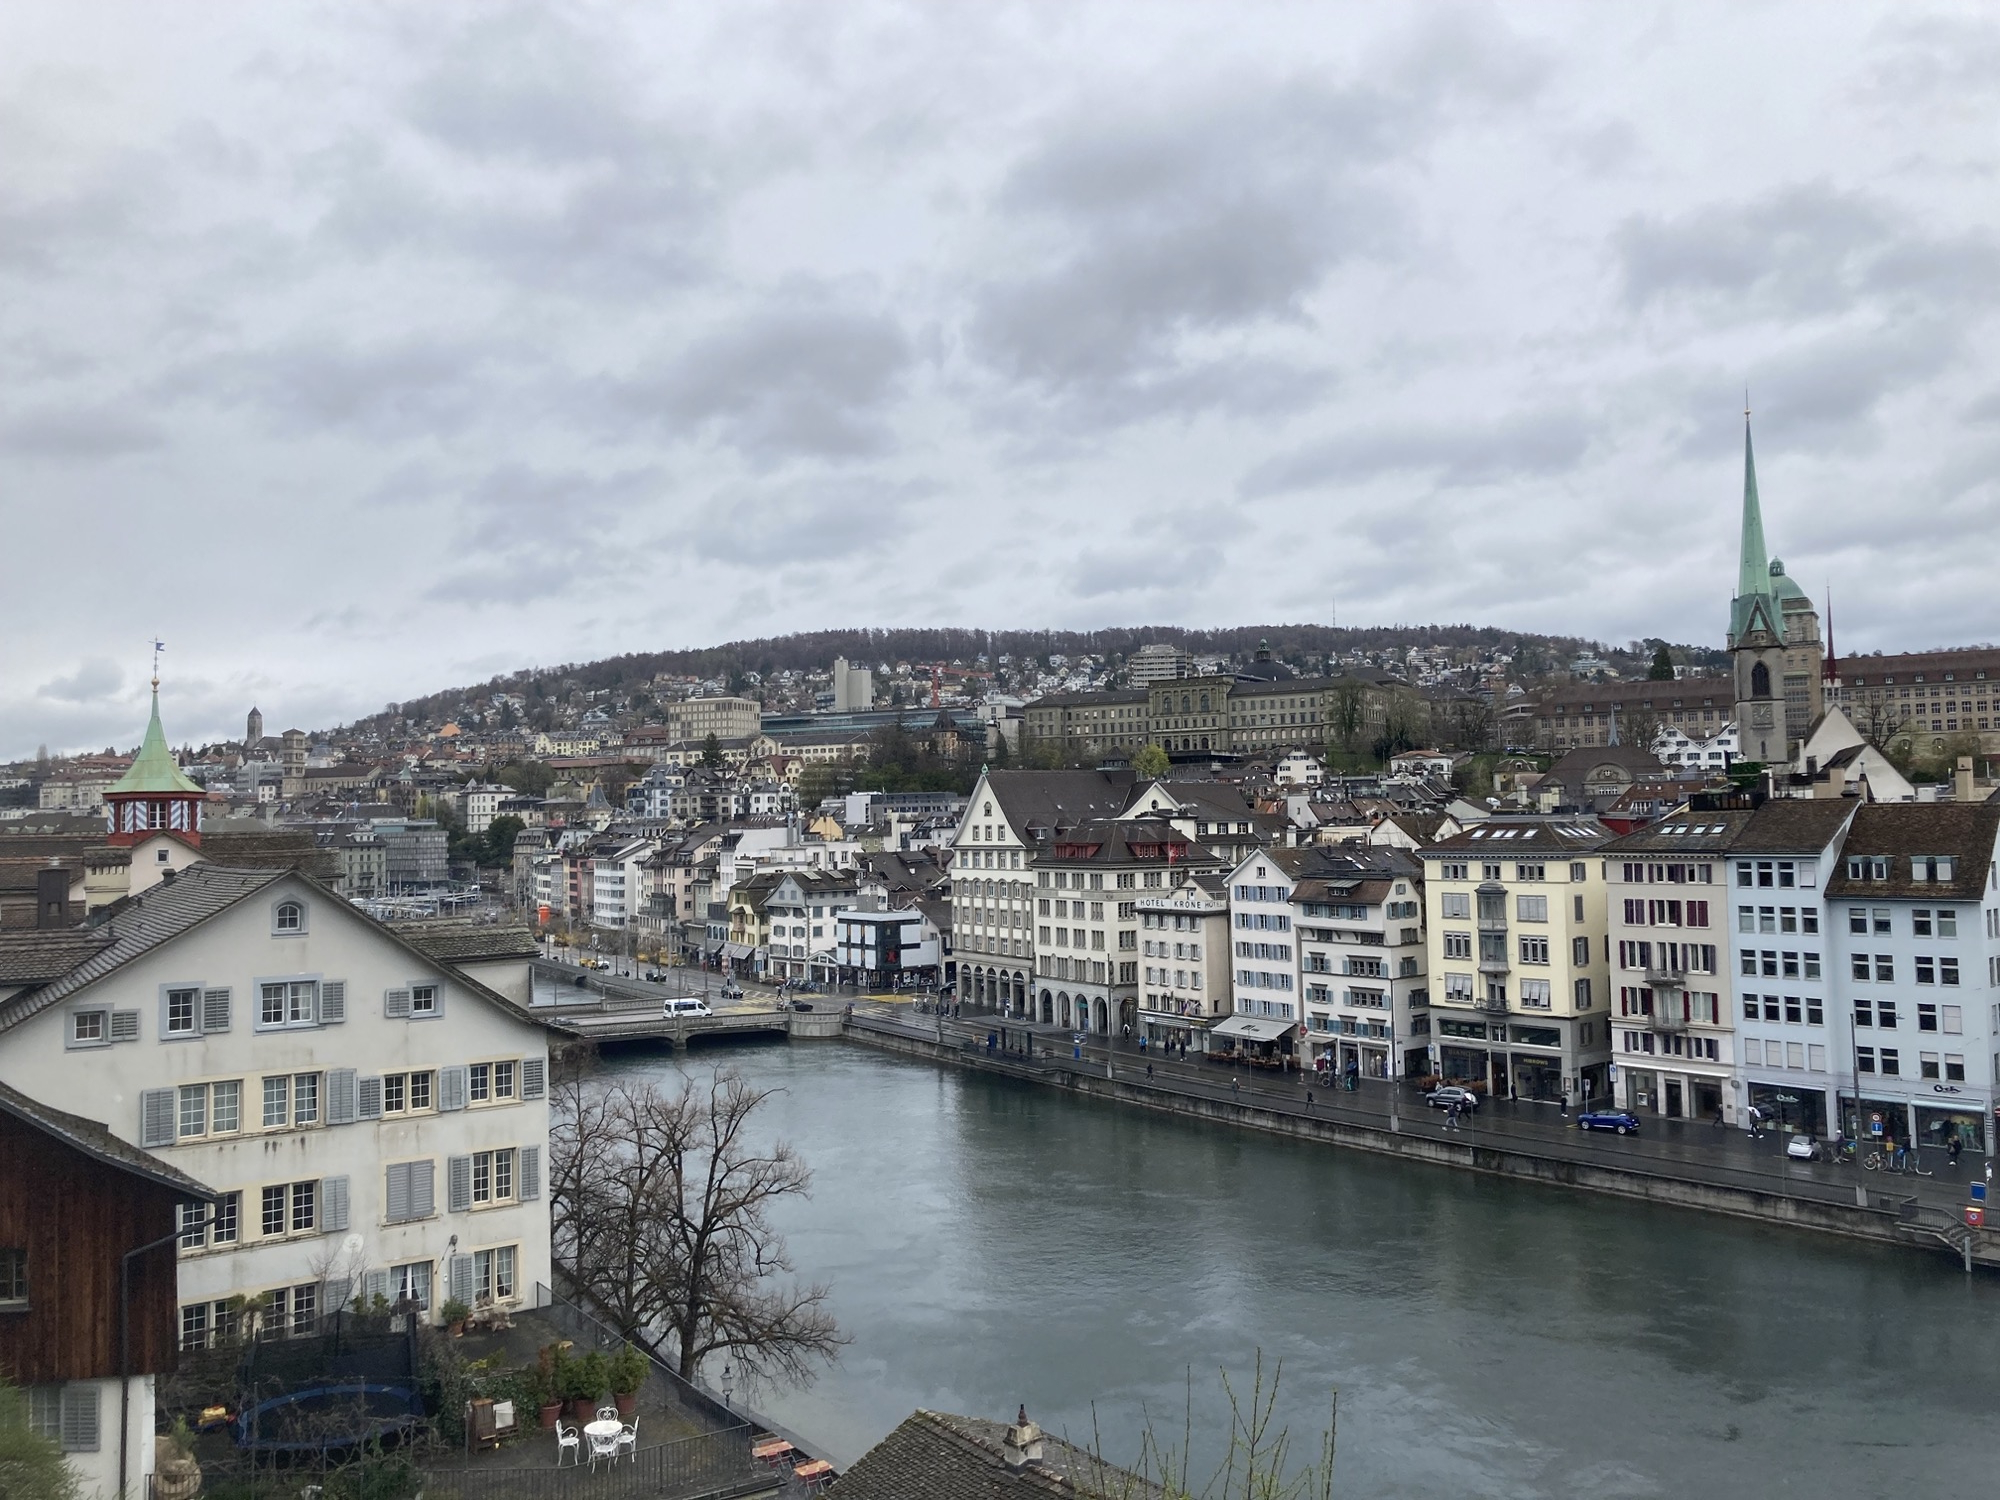 Blick vom Lindenhof über den Fluss Limmat auf die dahinter liegende Innenstadt mit Zunfthäusern, der Himmel ist bewölkt, düstere Stimmung